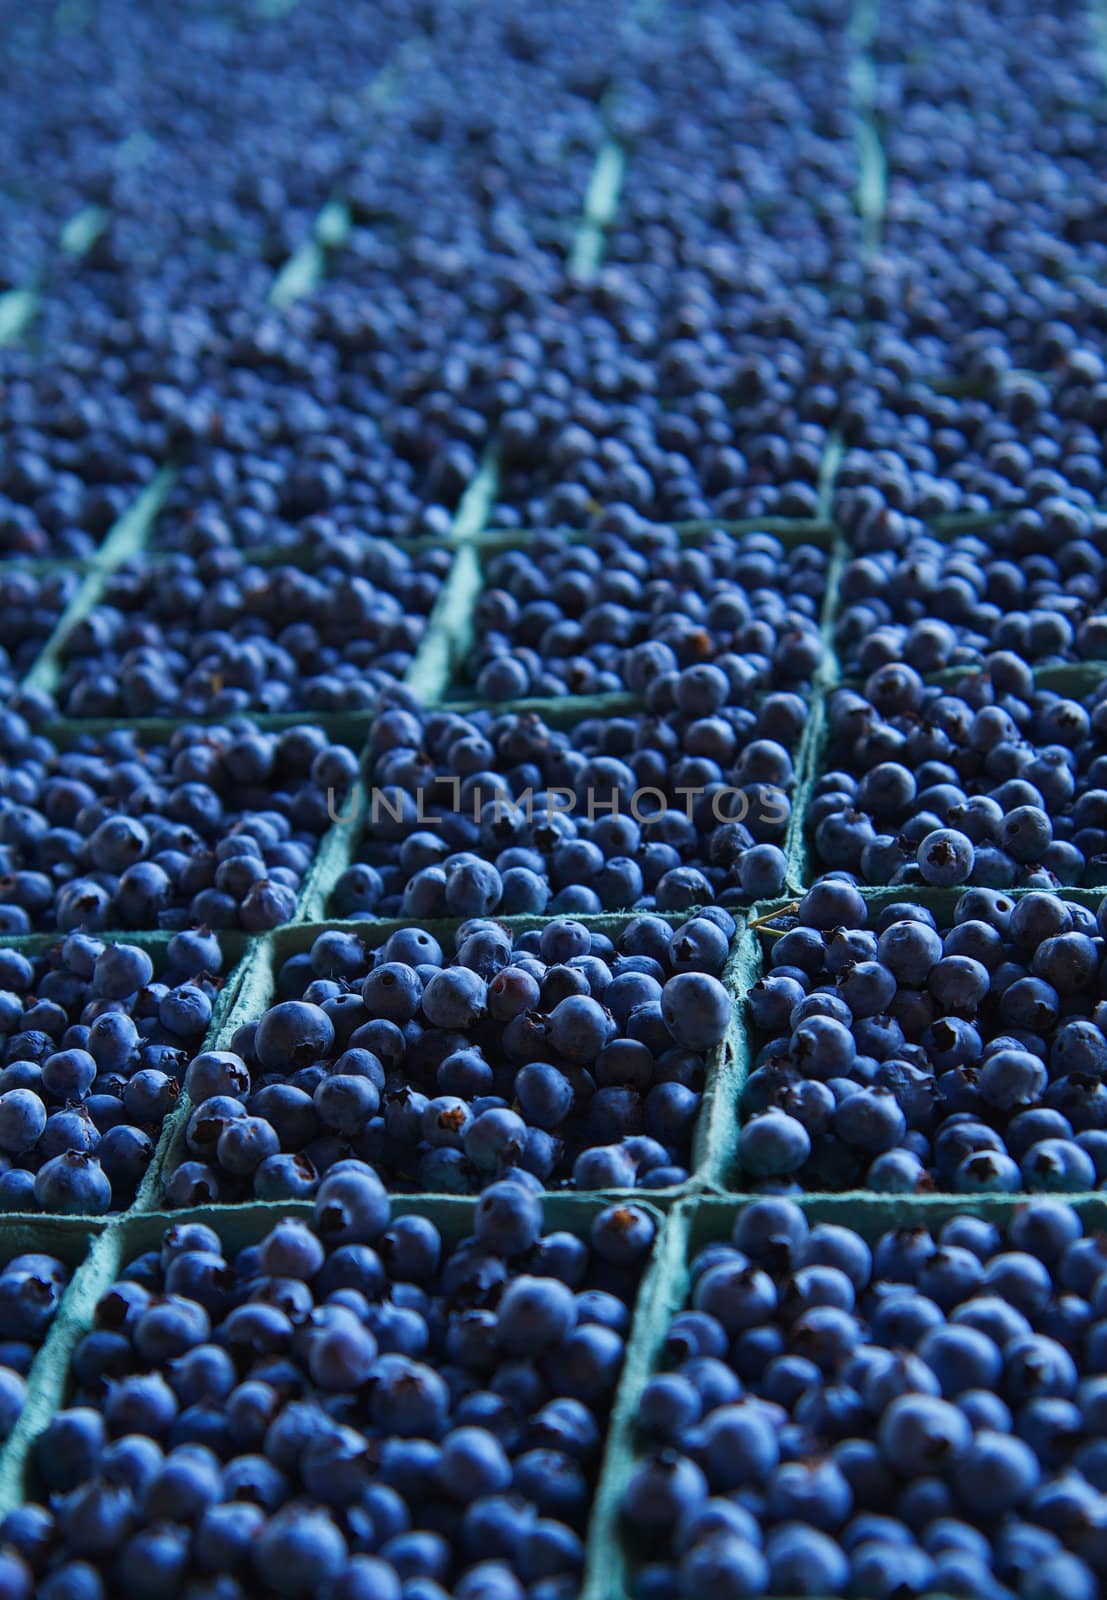 Miles of Blueberries by bobkeenan